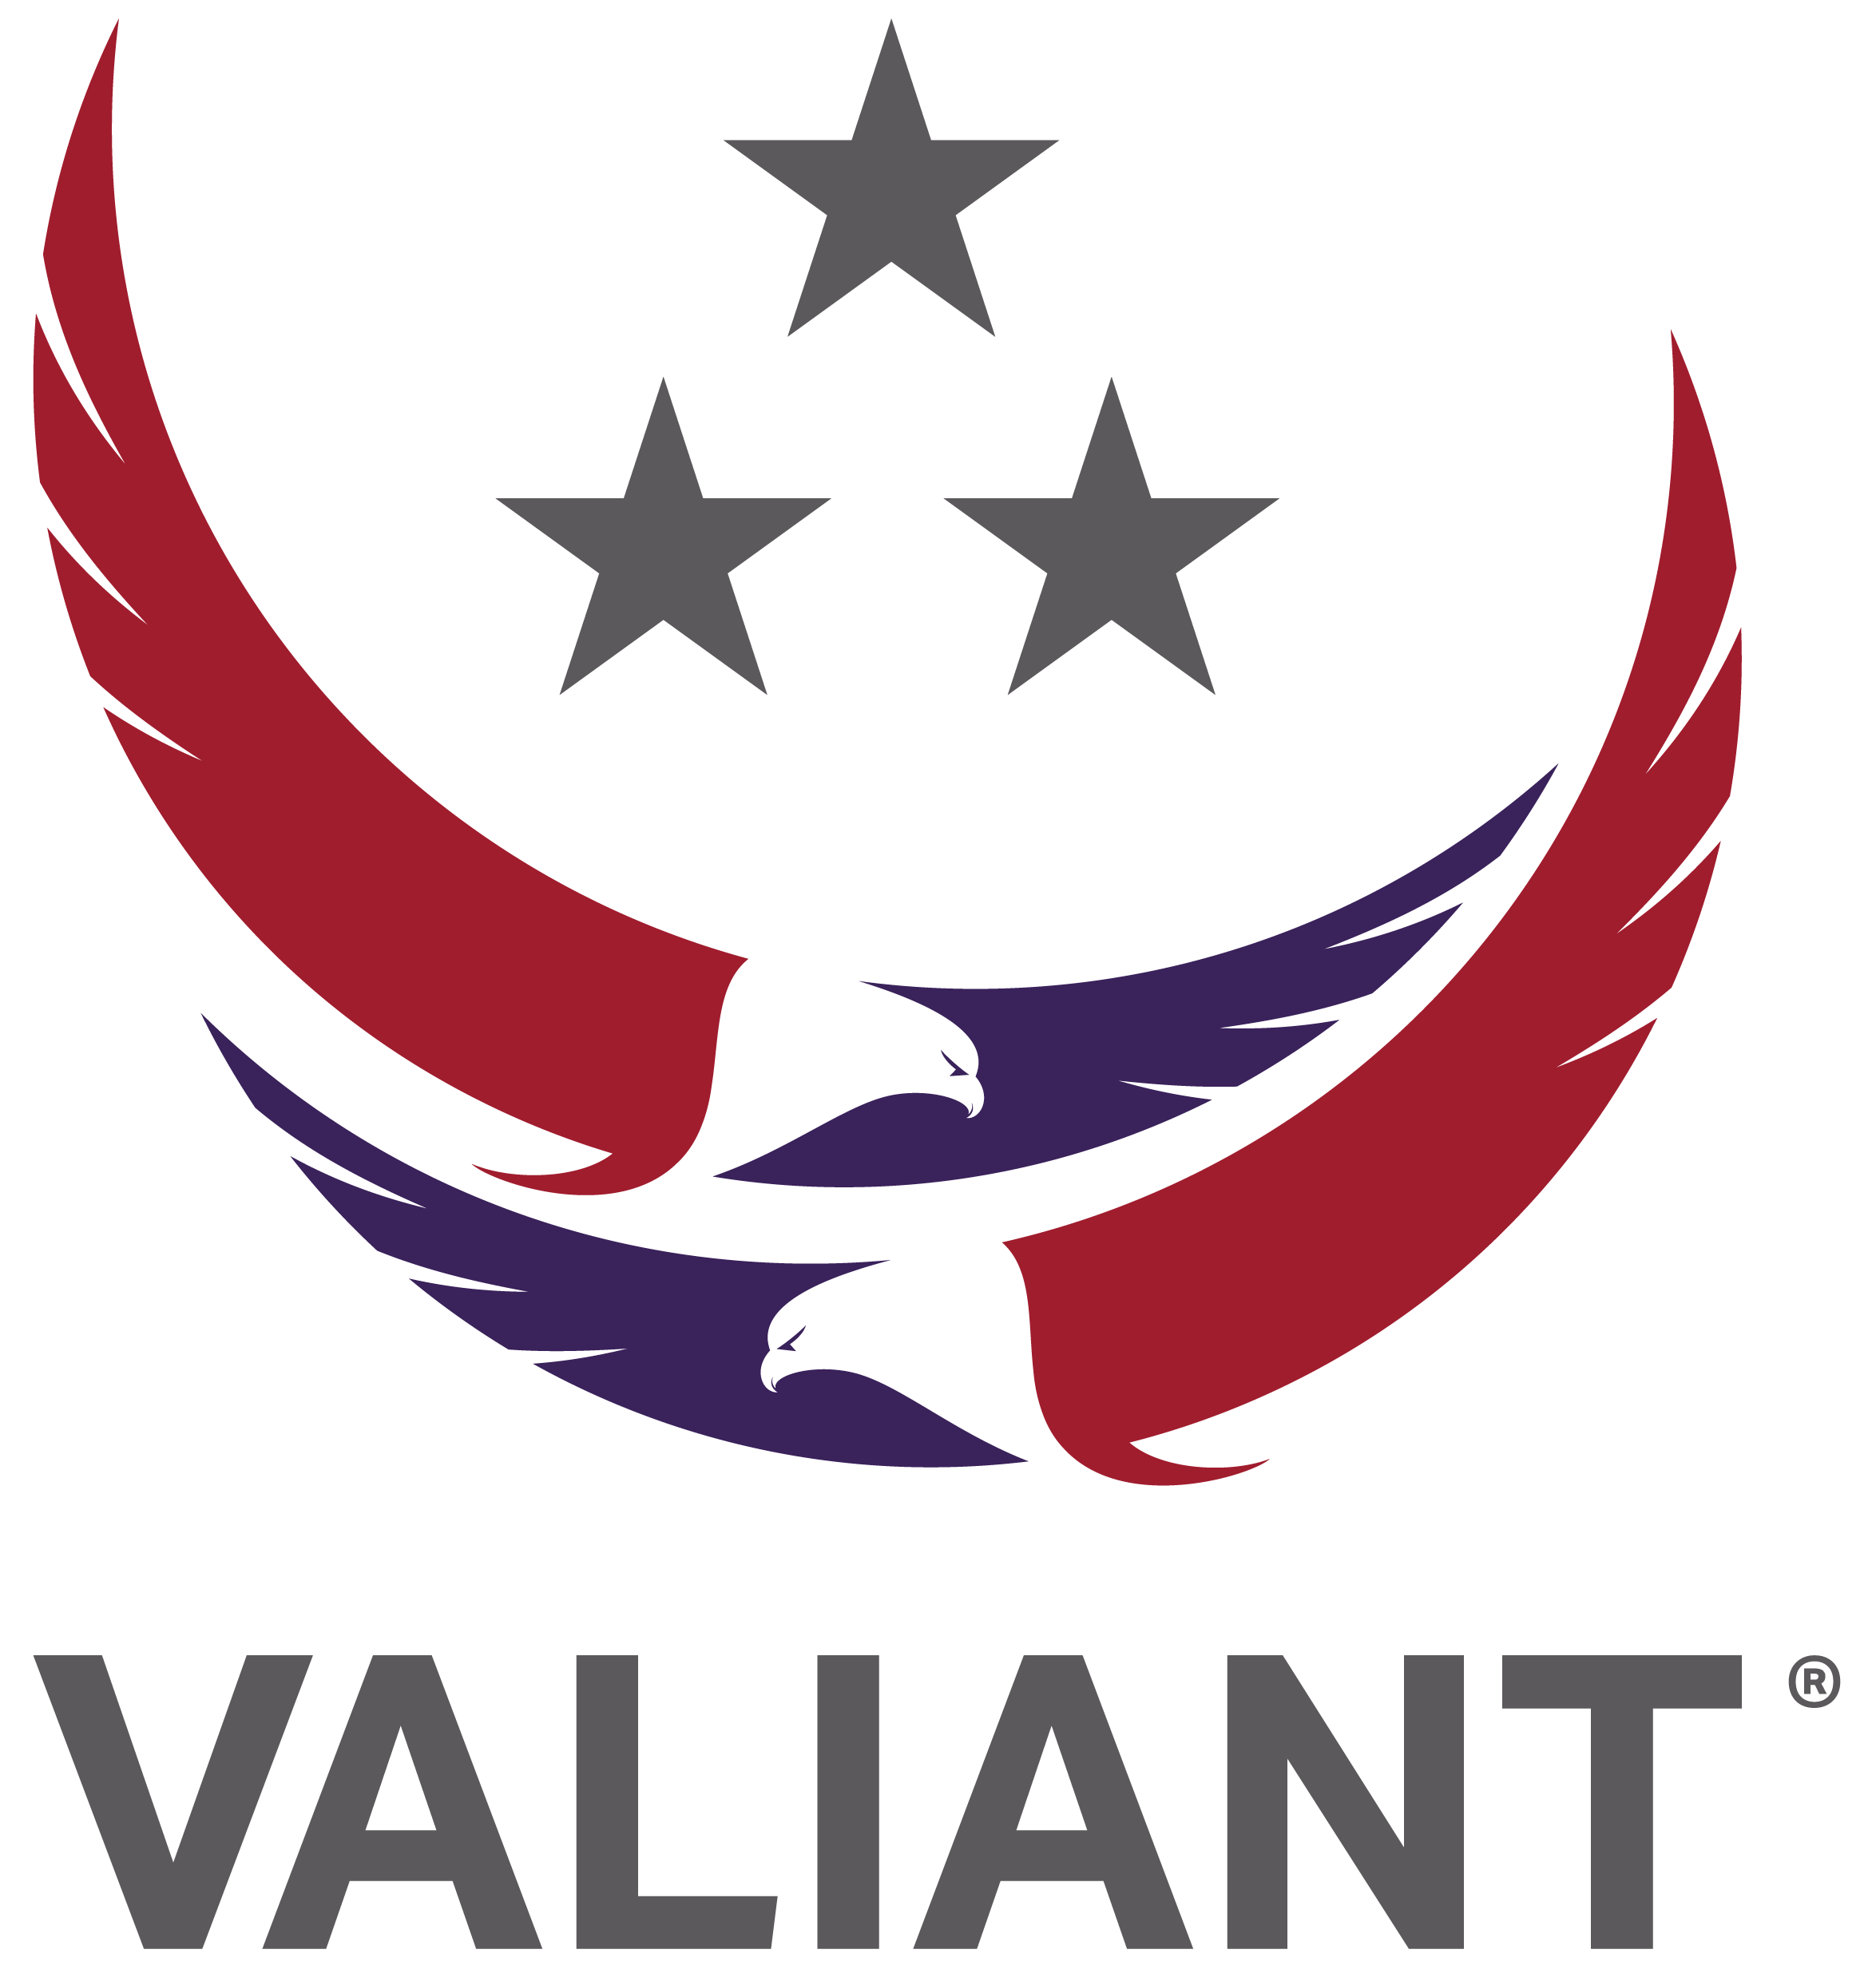 Valiant_logo_original.png